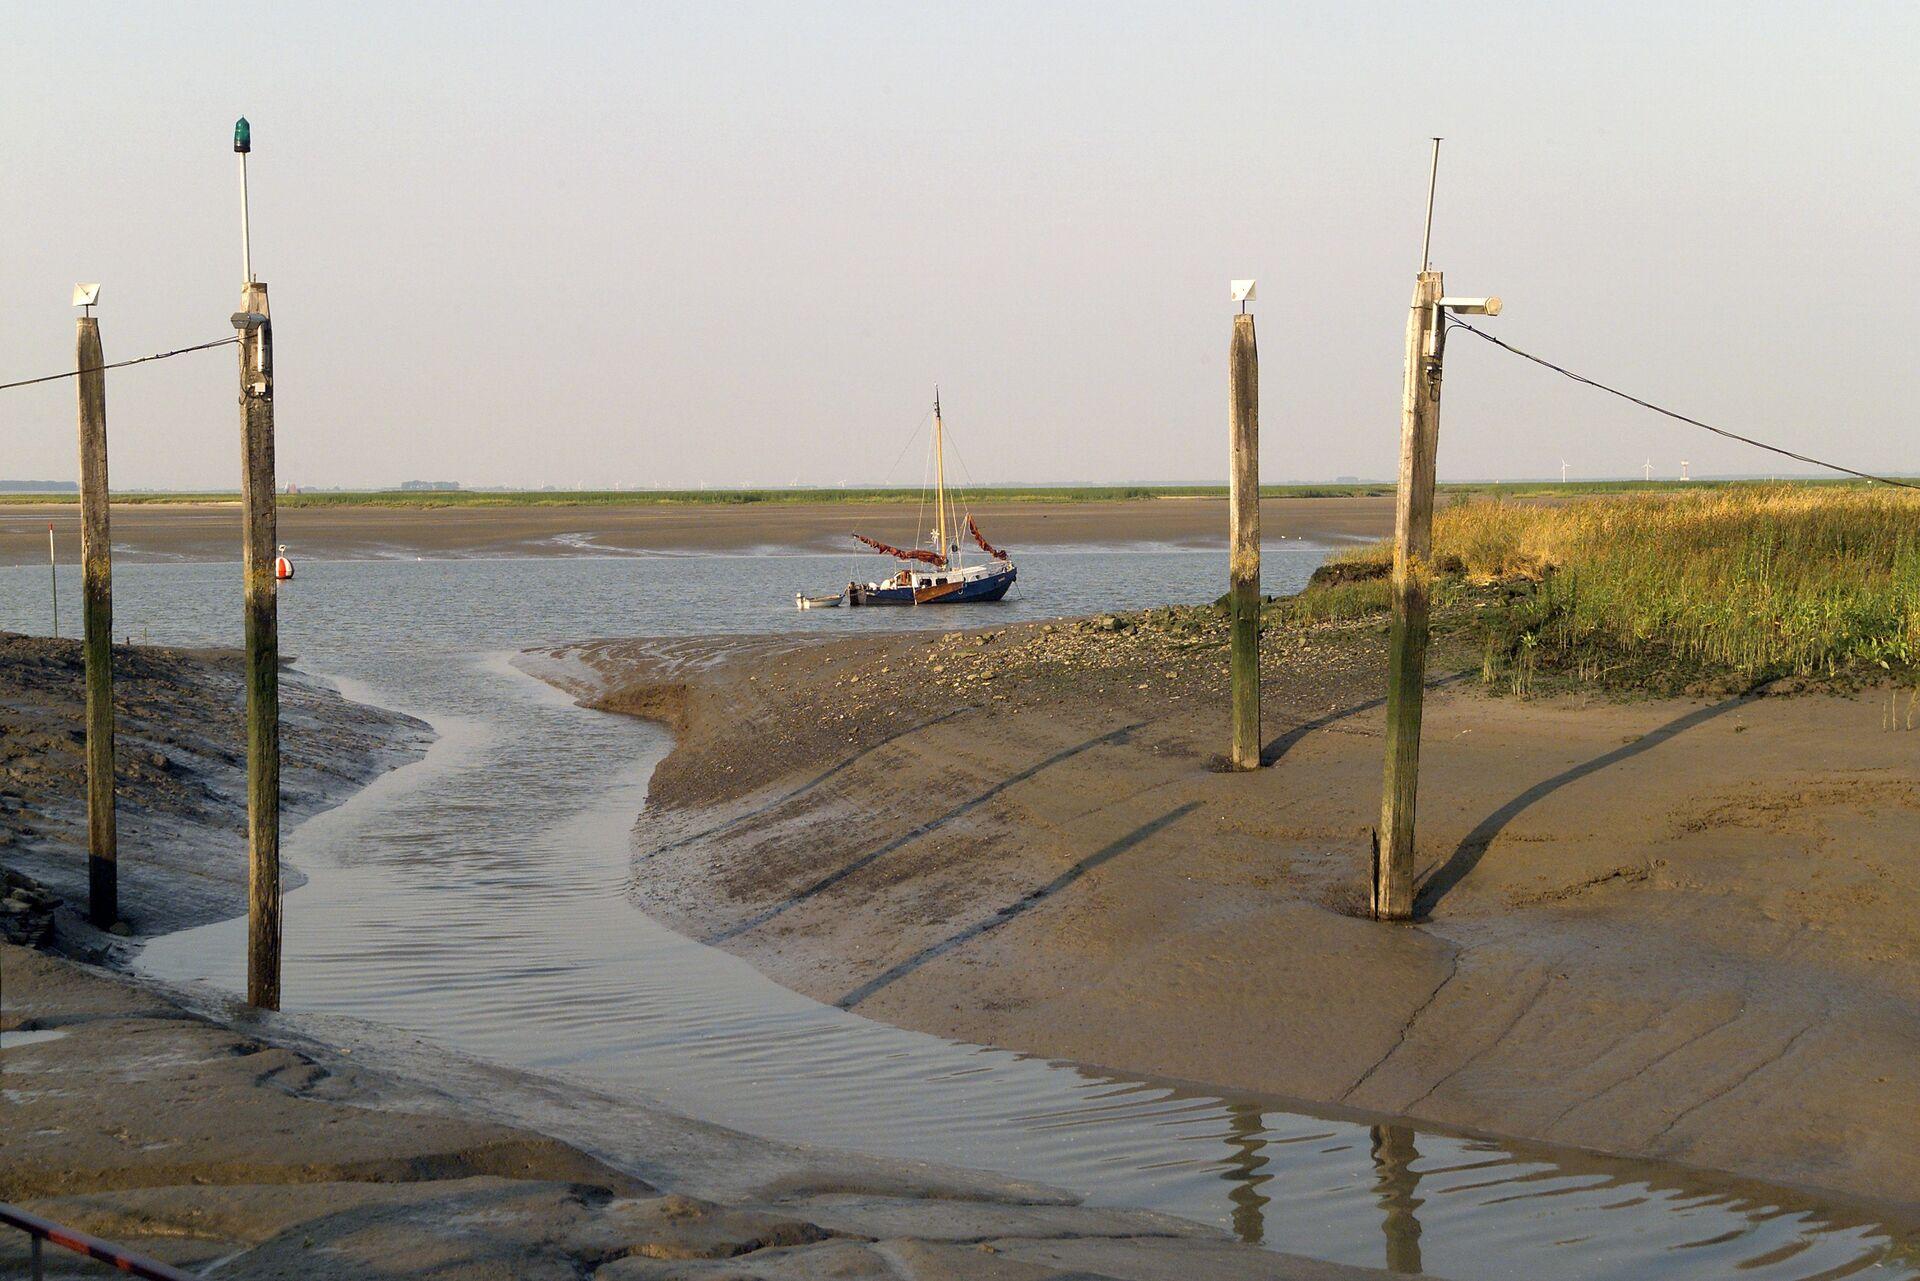 Het Verdronken Land van Saeftinghe is een natuurgebied gelegen op de grens van Nederland en België. Het grootste deel van het gebied ligt in het Nederlandse Zeeuws-Vlaanderen